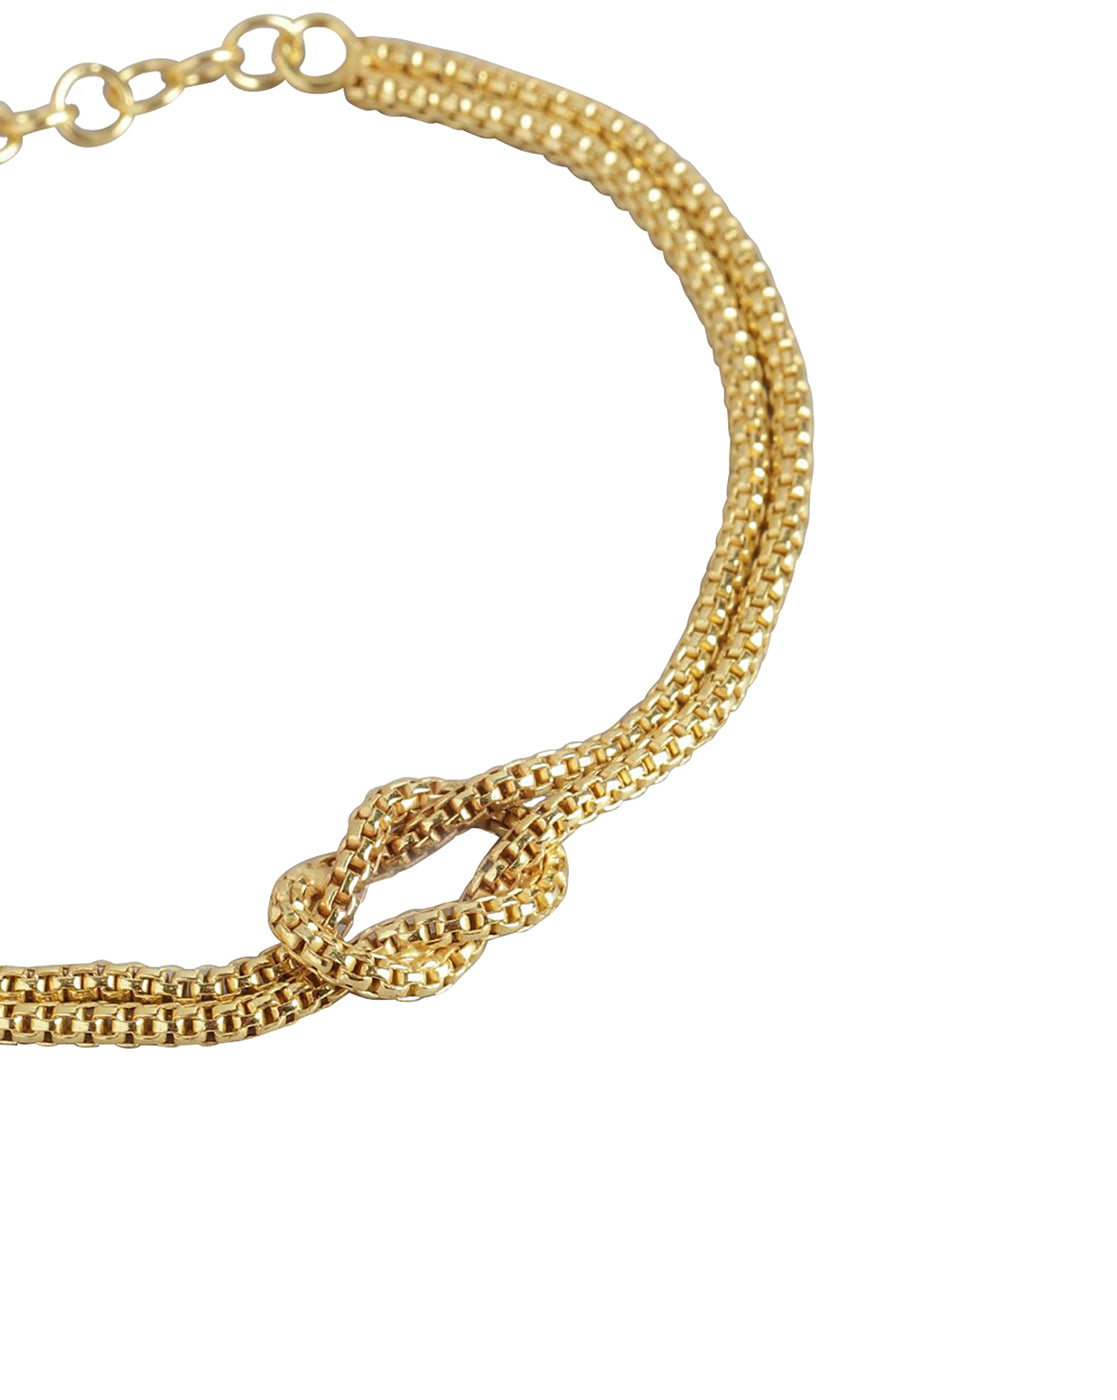 Buy Zivom Clover Flower 18k Gold Black White Stainless Steel Chain Bracelet  For Women Online at Best Prices in India - JioMart.